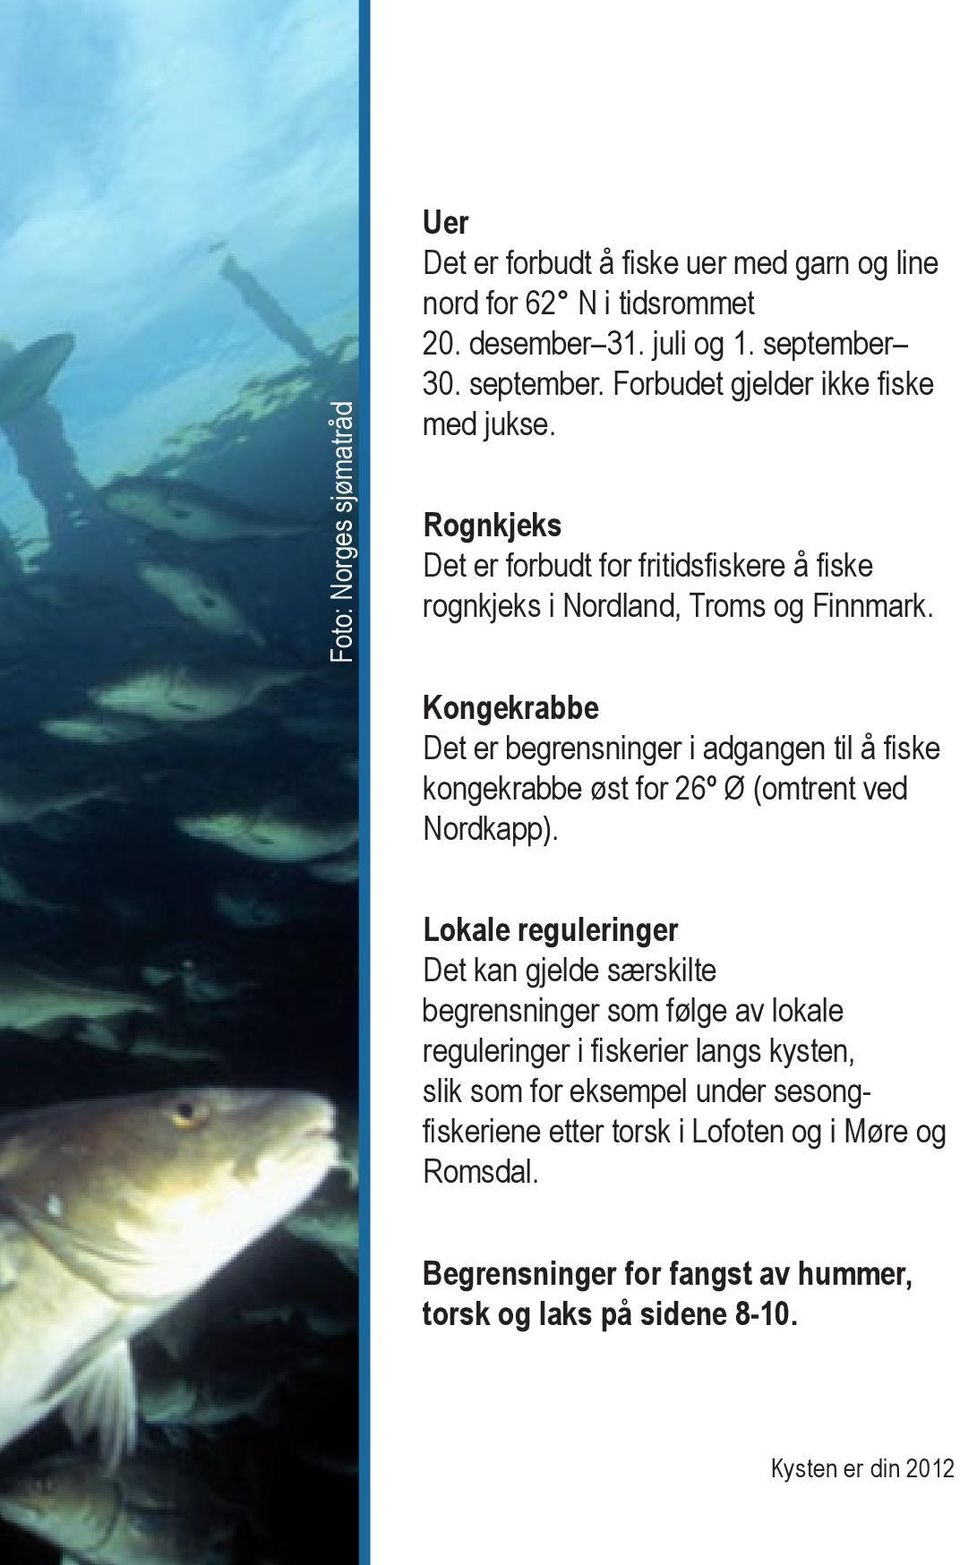 Kongekrabbe Det er begrensninger i adgangen til å fiske kongekrabbe øst for 26º Ø (omtrent ved Nordkapp).